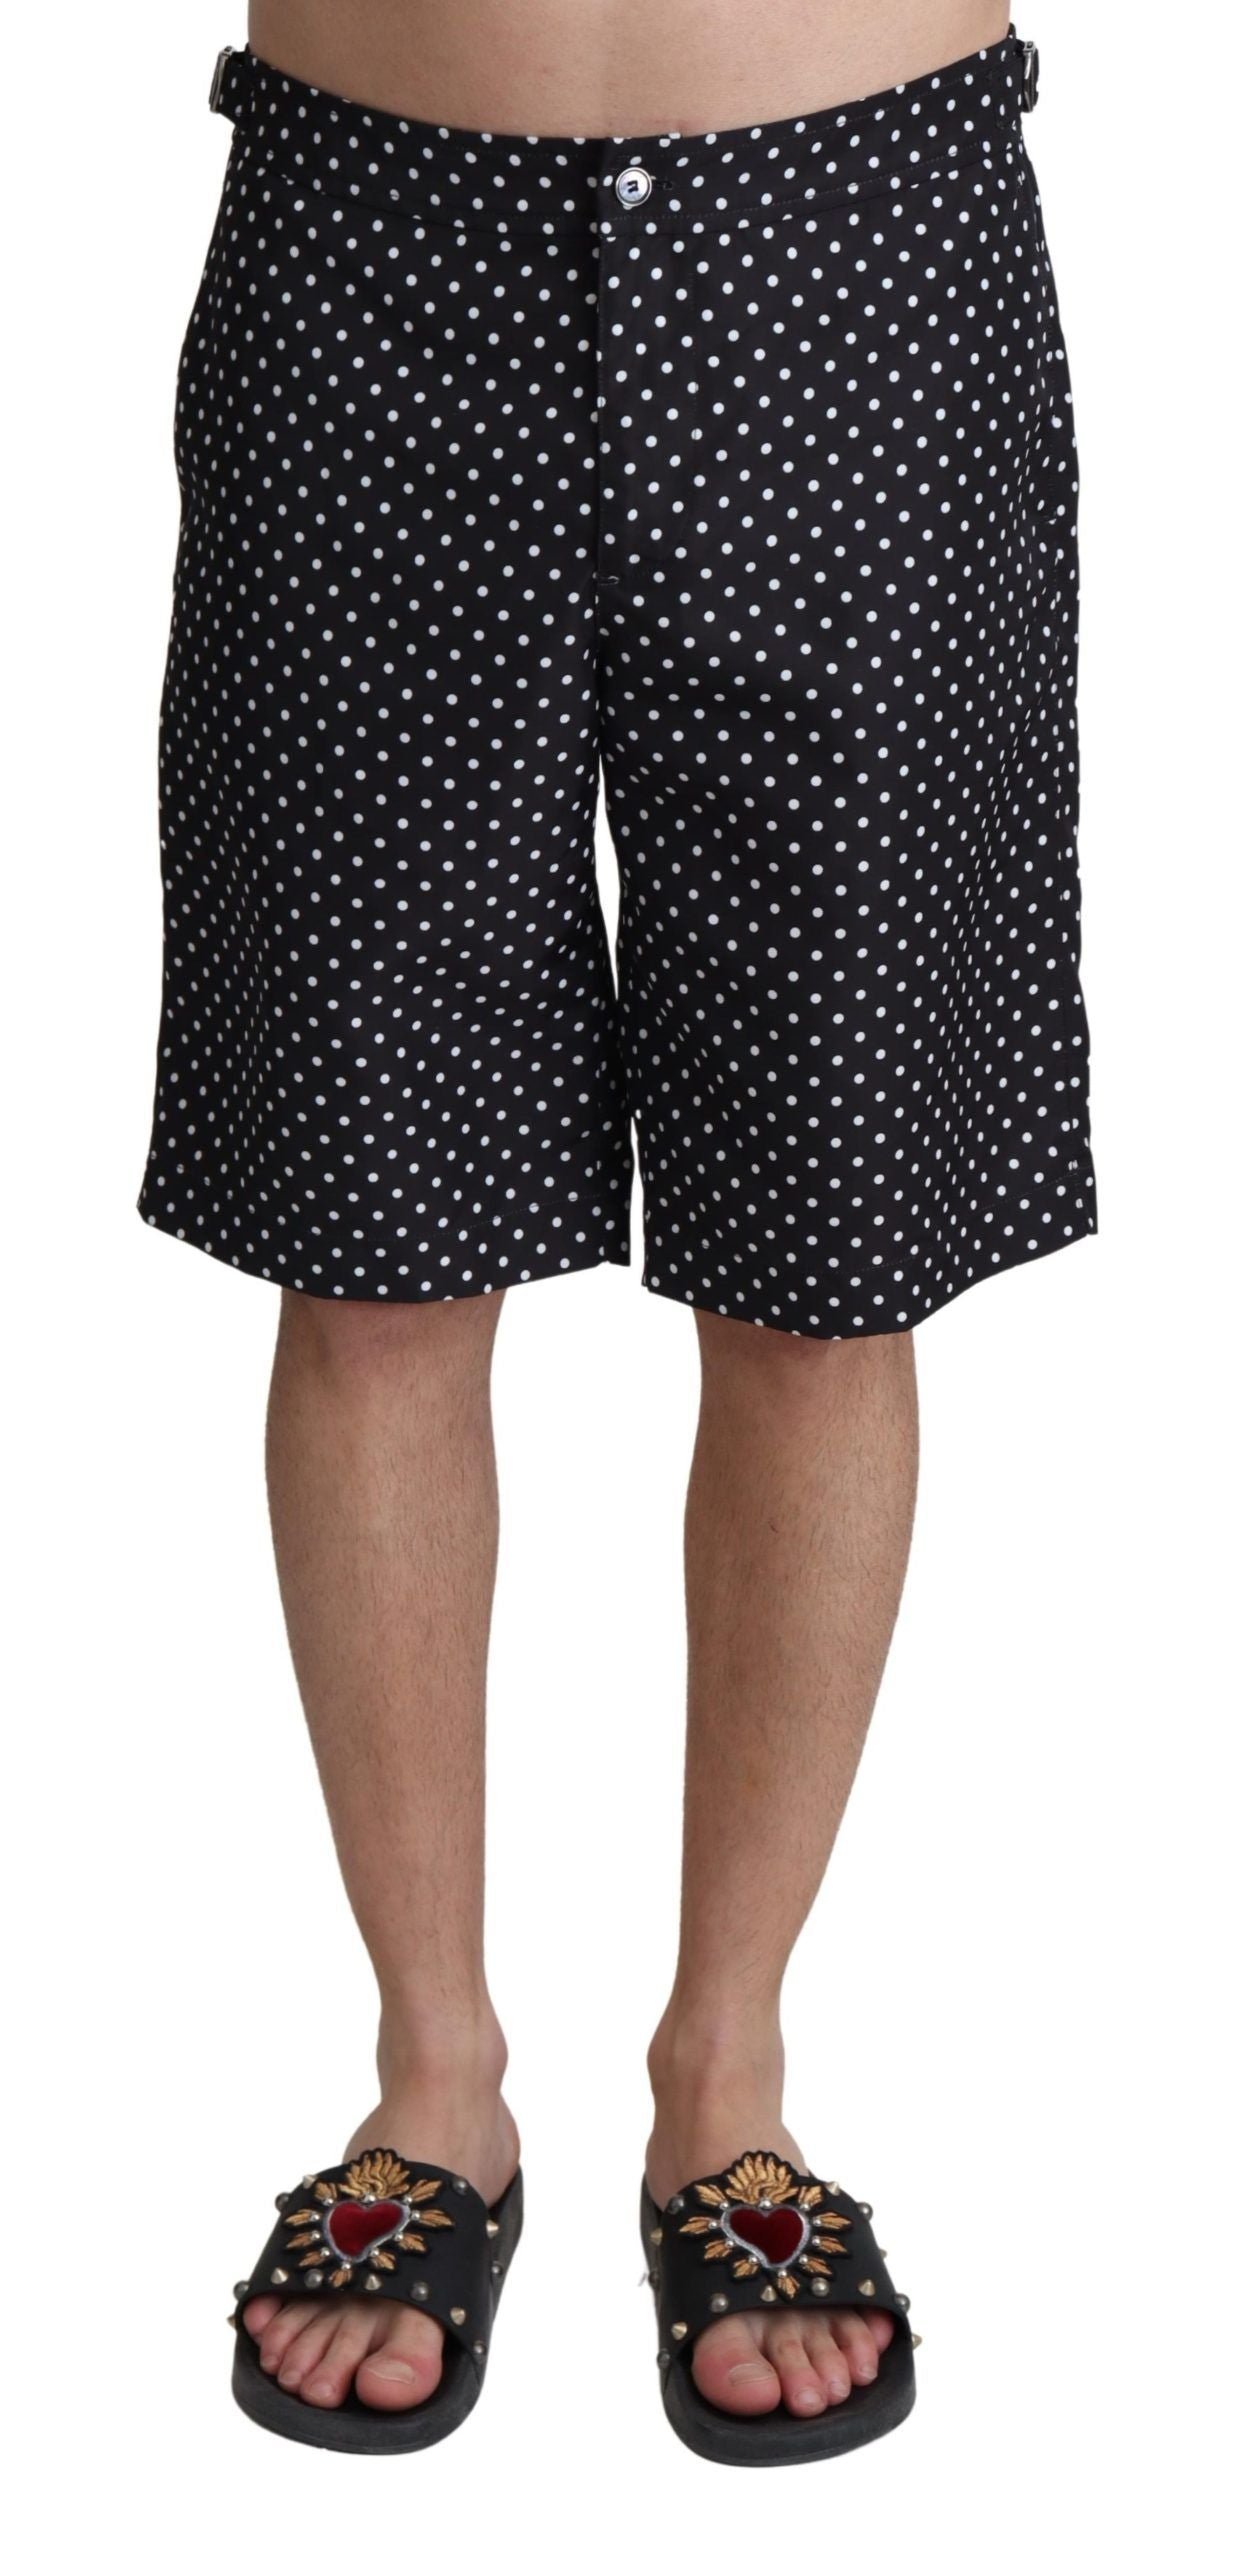 Dolce & Gabbana Black Polka Dots Beachwear Shorts Swimwear